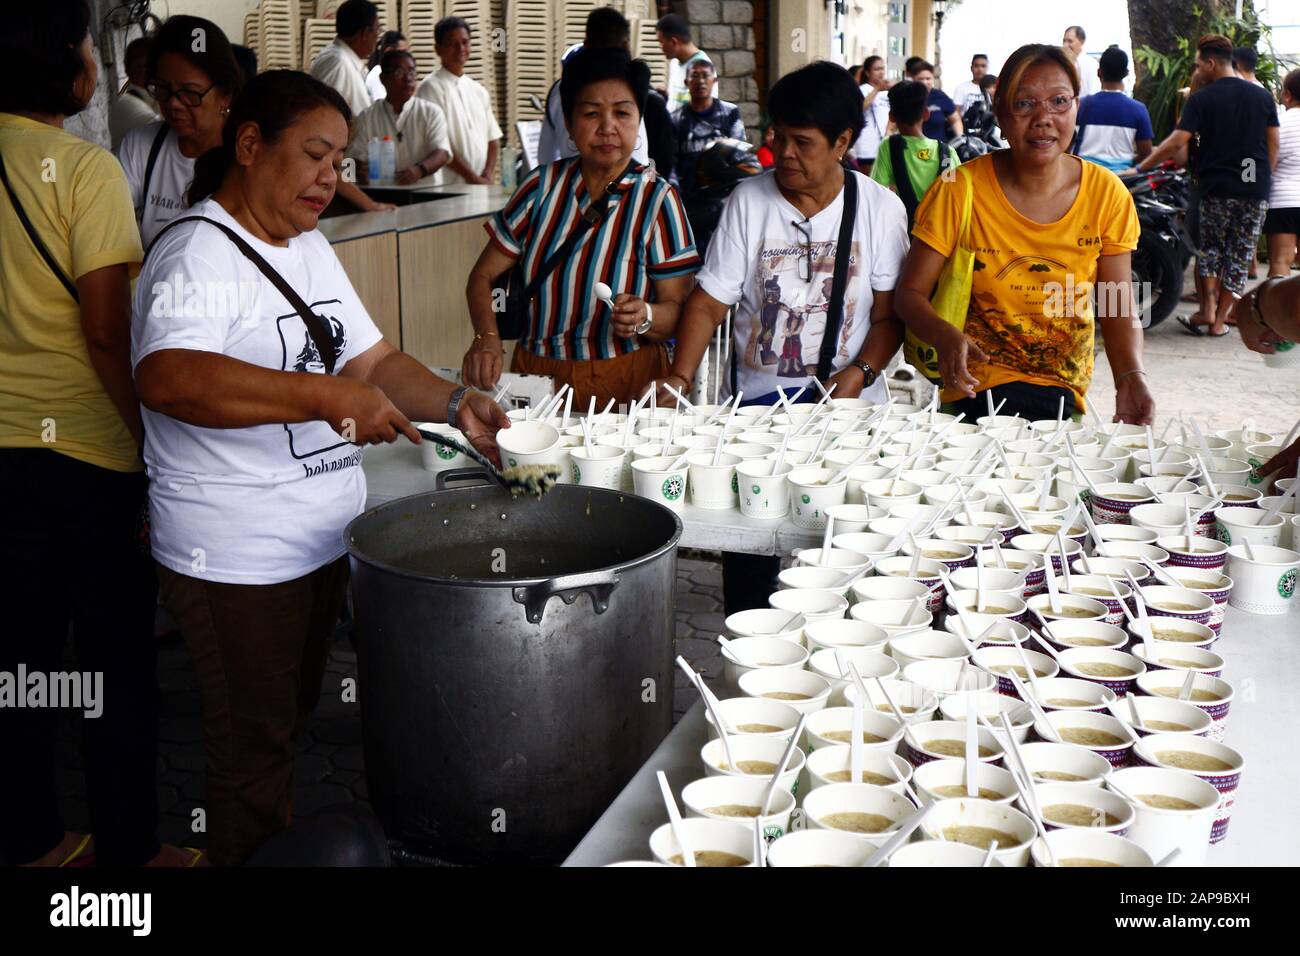 Città di Antipolo, Filippine - 18 gennaio 2020: Volontari di un'organizzazione senza scopo di lucro servono il cibo al pubblico durante un programma settimanale di alimentazione. Foto Stock